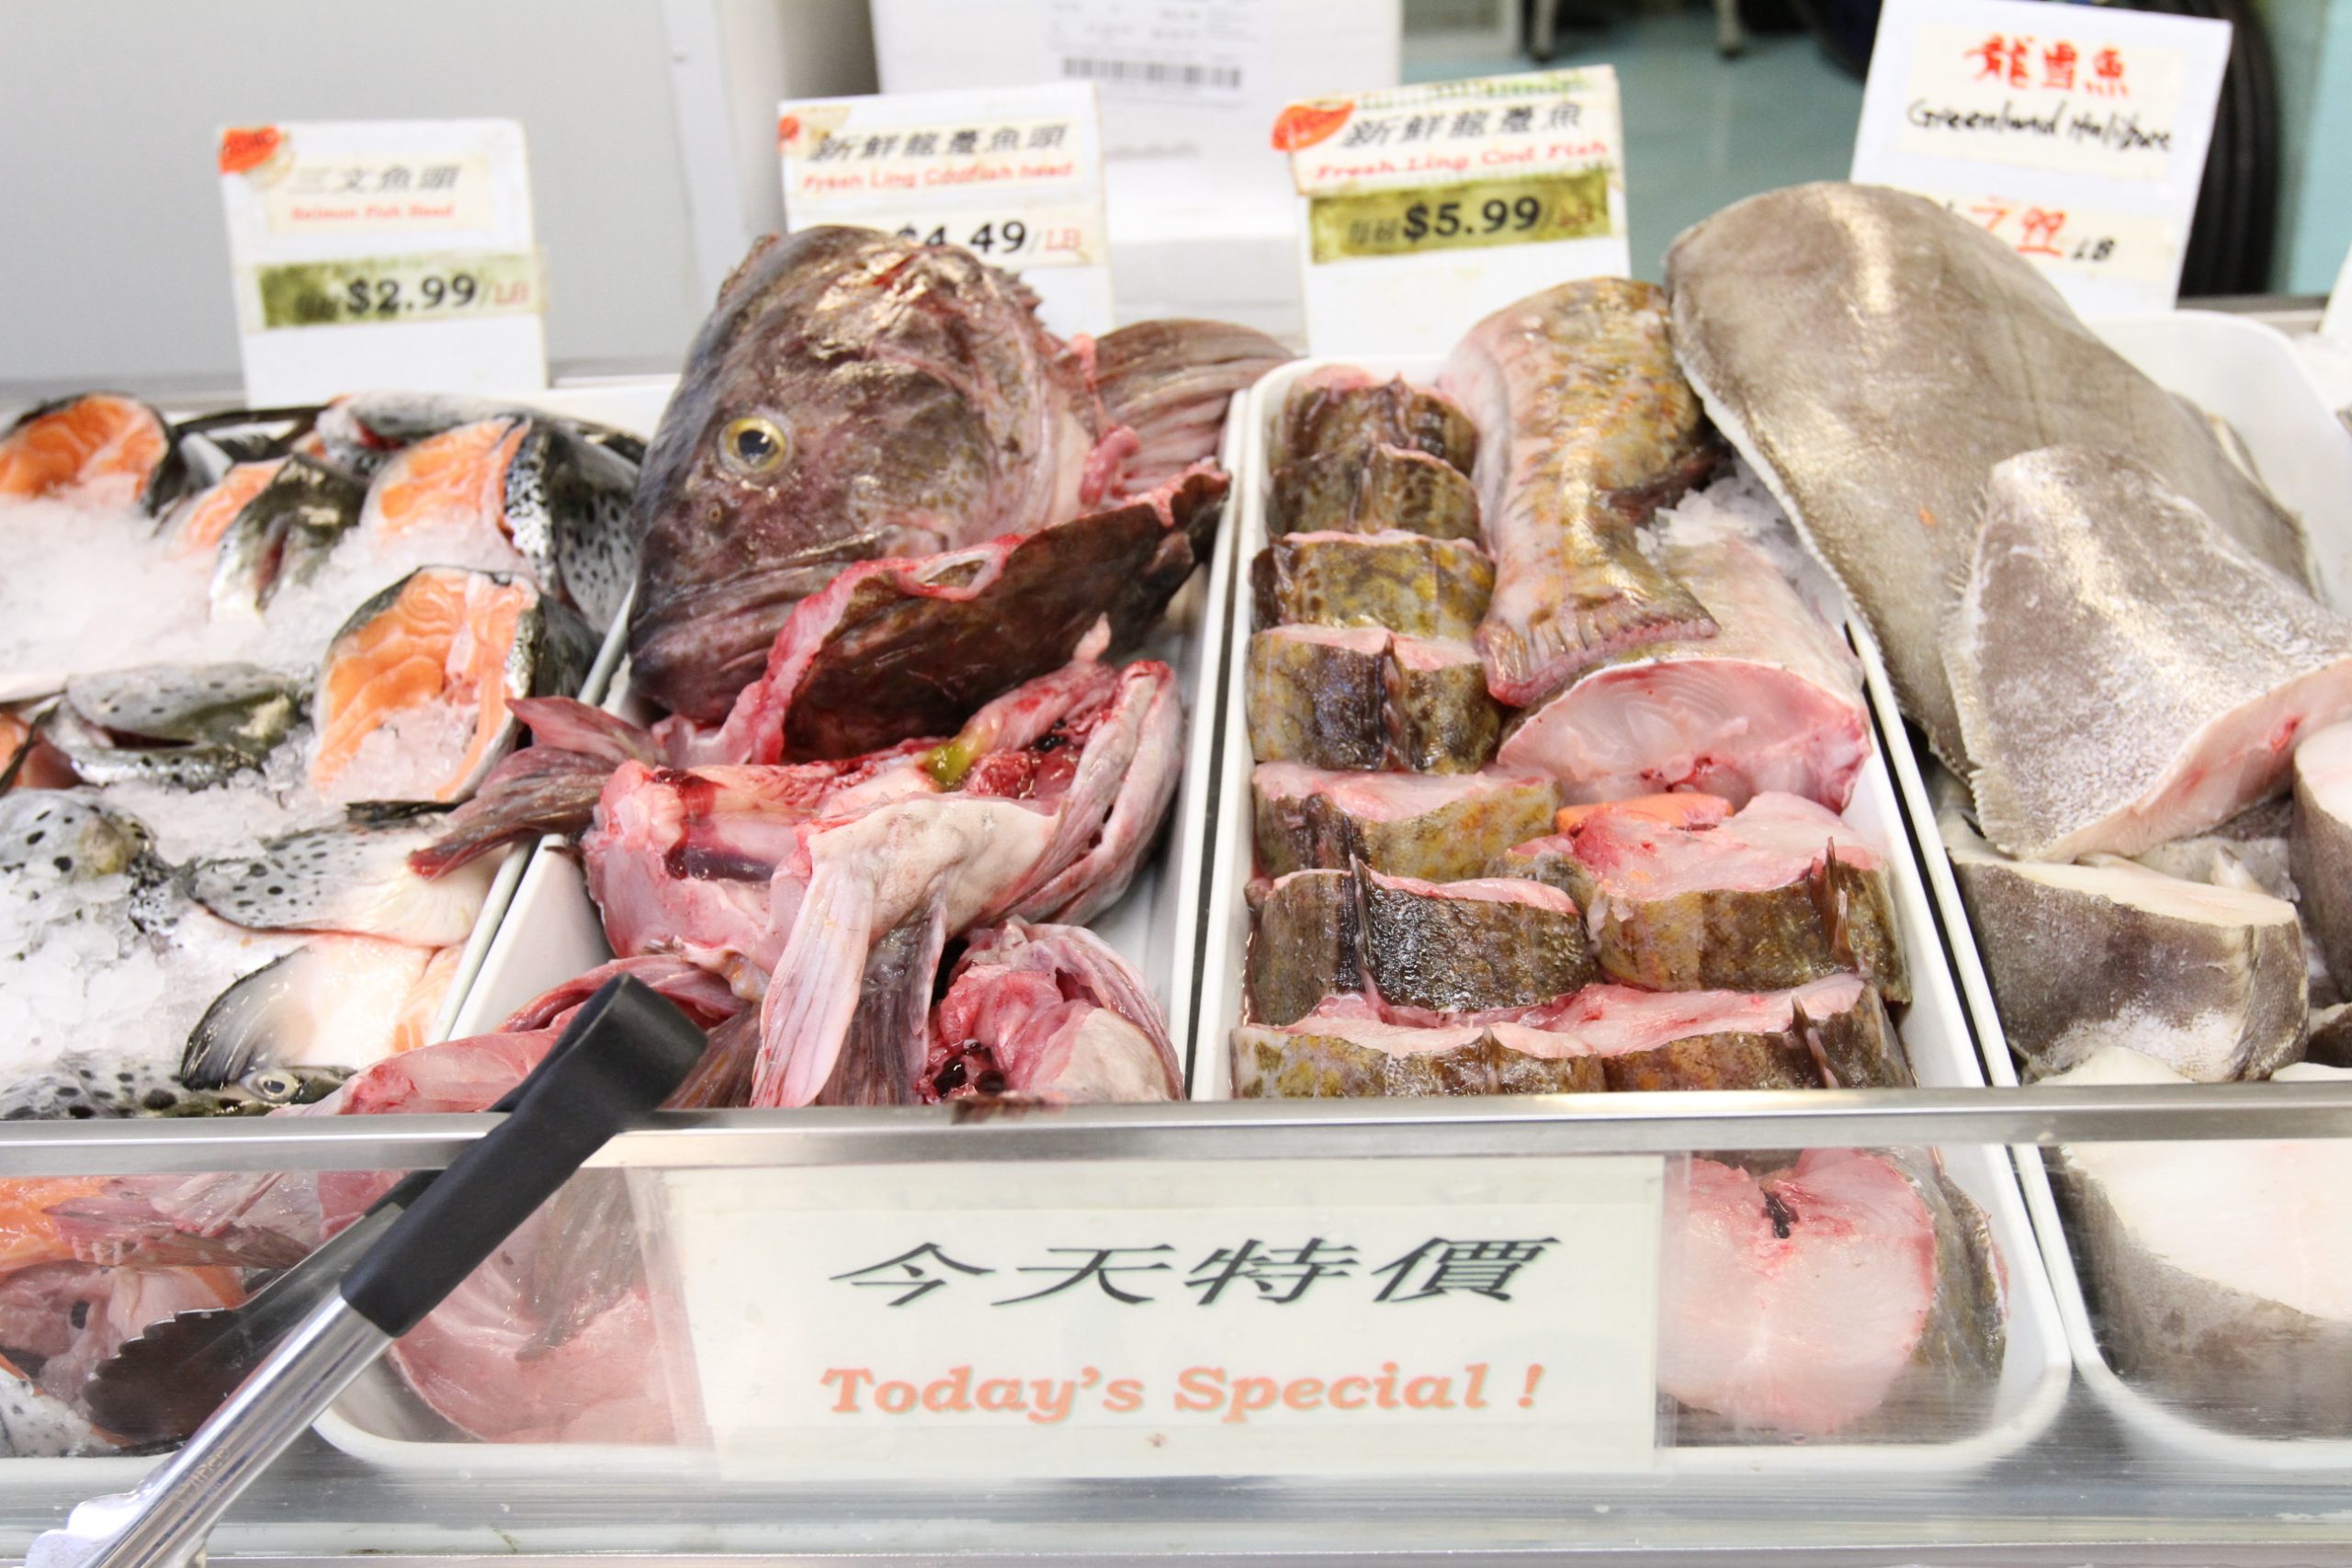 Hoi Fu Seafood photos at Henlong Market